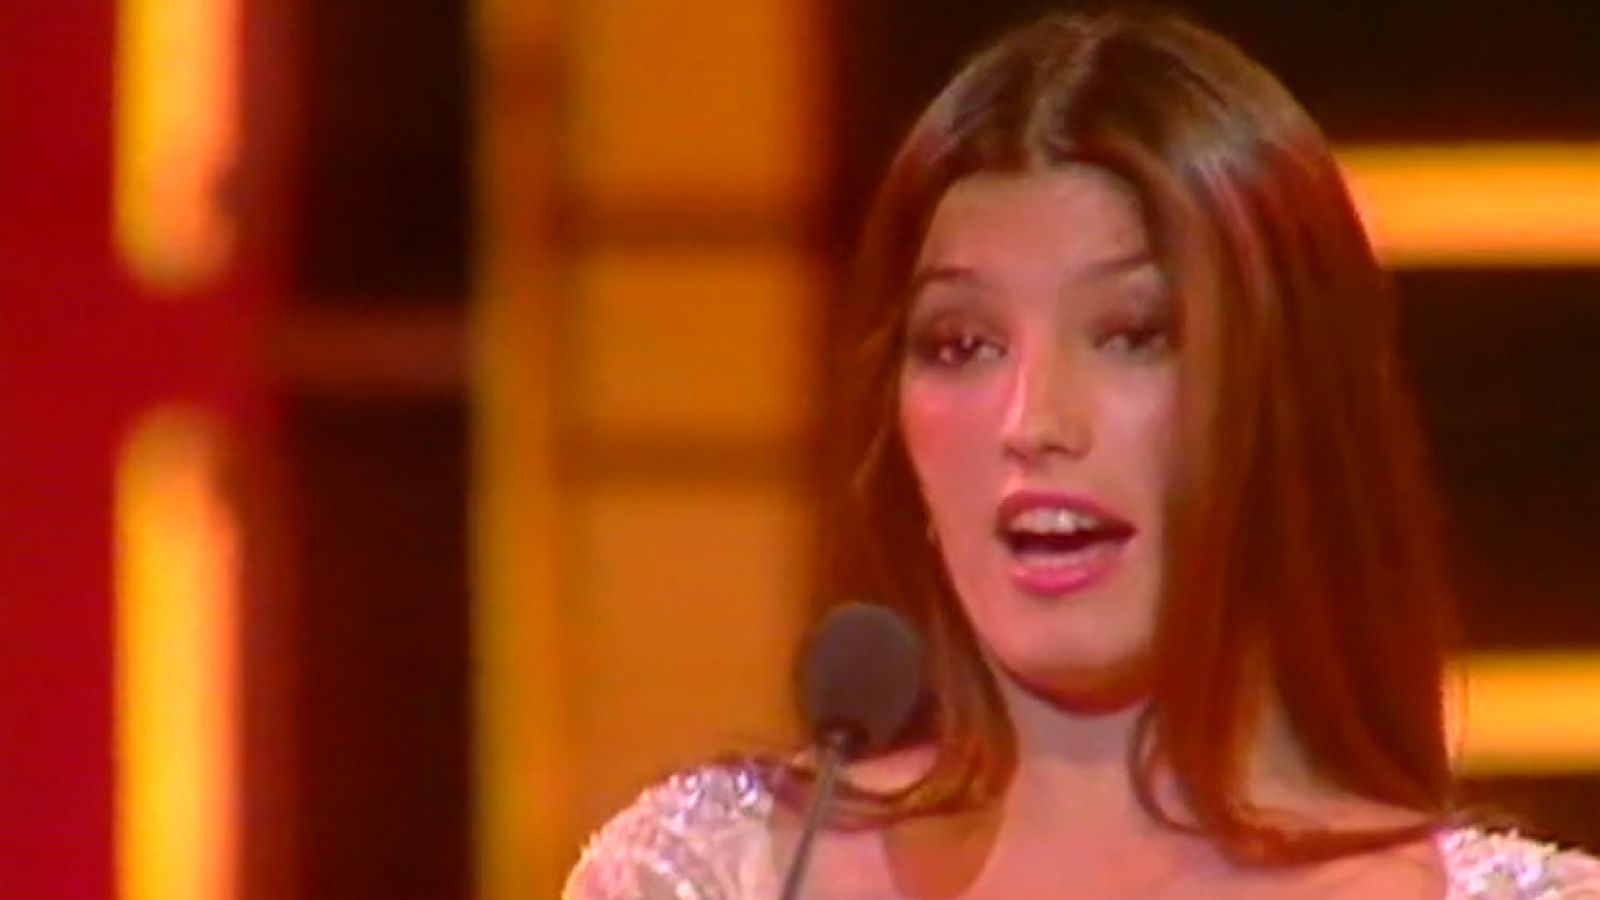 Festival de Eurovisión 1982 - Lucía cantó "Él"